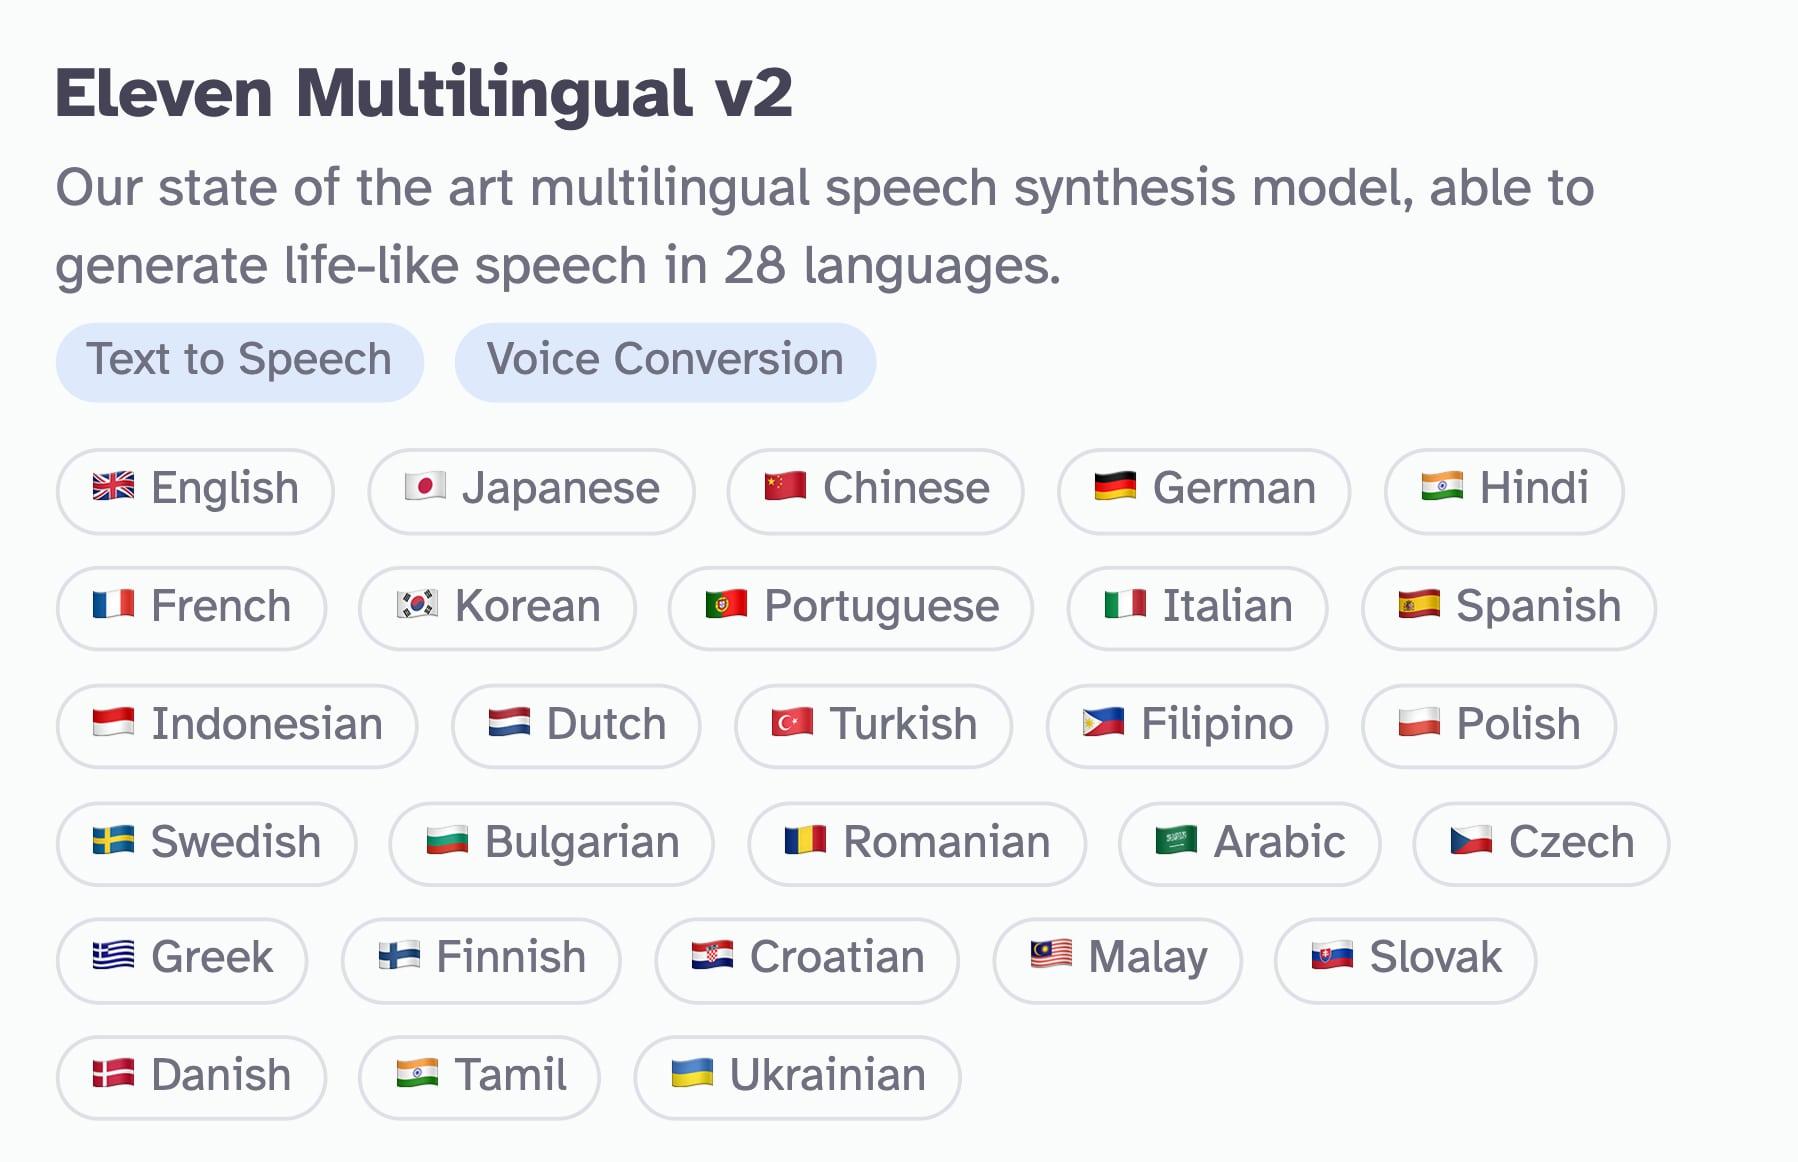 Multilingual V2